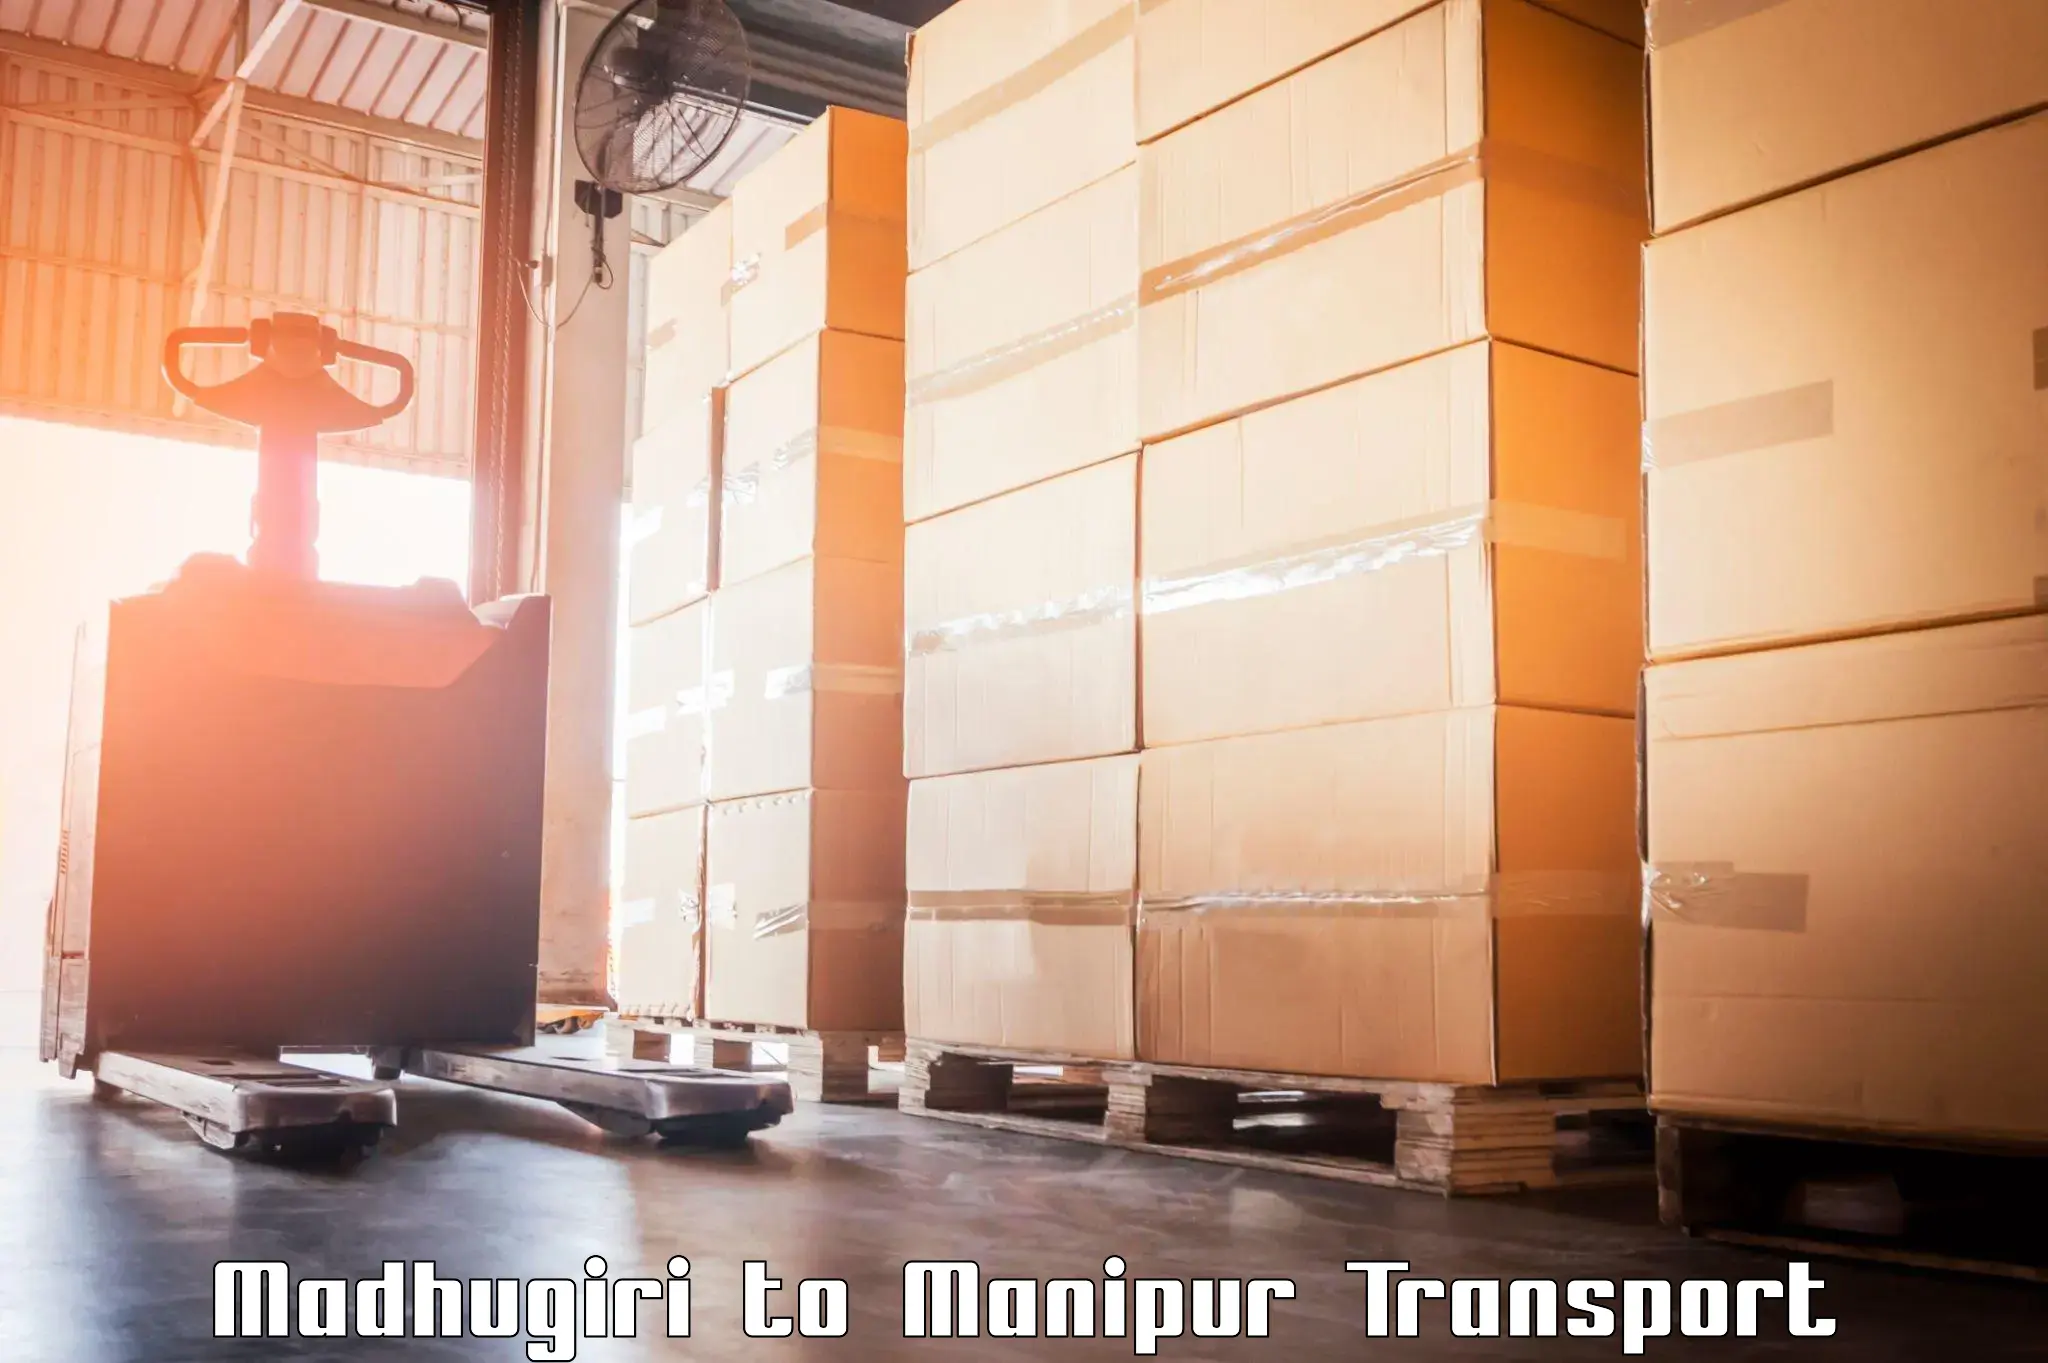 Transport in sharing Madhugiri to Manipur